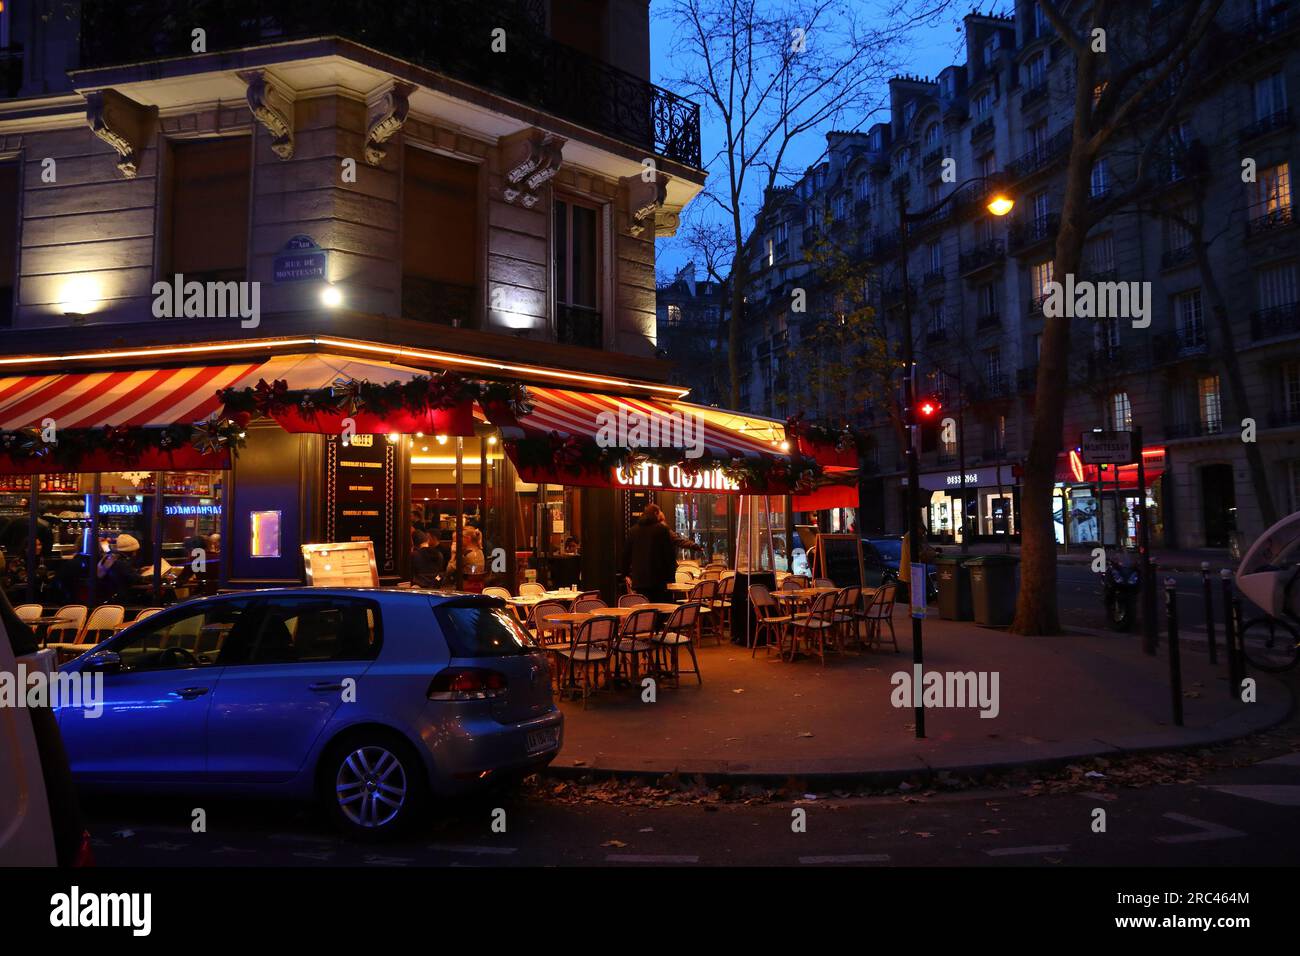 PARIGI, FRANCIA - 10 DICEMBRE 2019: La gente visita un caffè locale nel 7° Arrondissement di Parigi, Francia. Parigi è la città più grande della Francia, con 12,5 mulini Foto Stock